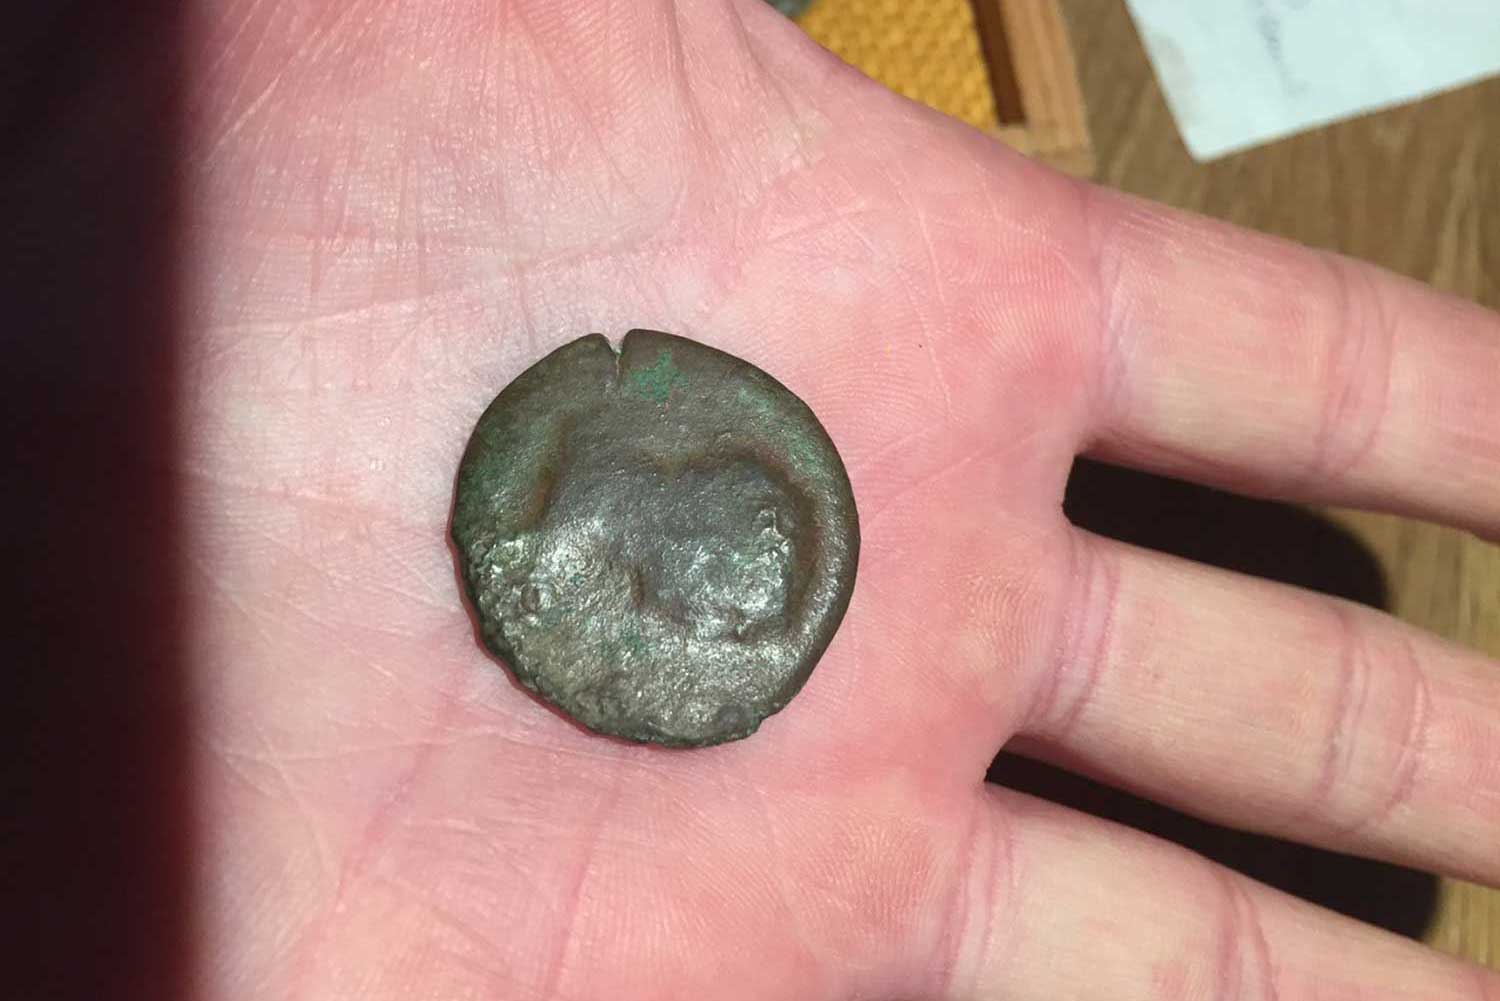 A Roman coin found metal detecting at Pete’s Airgun Farm